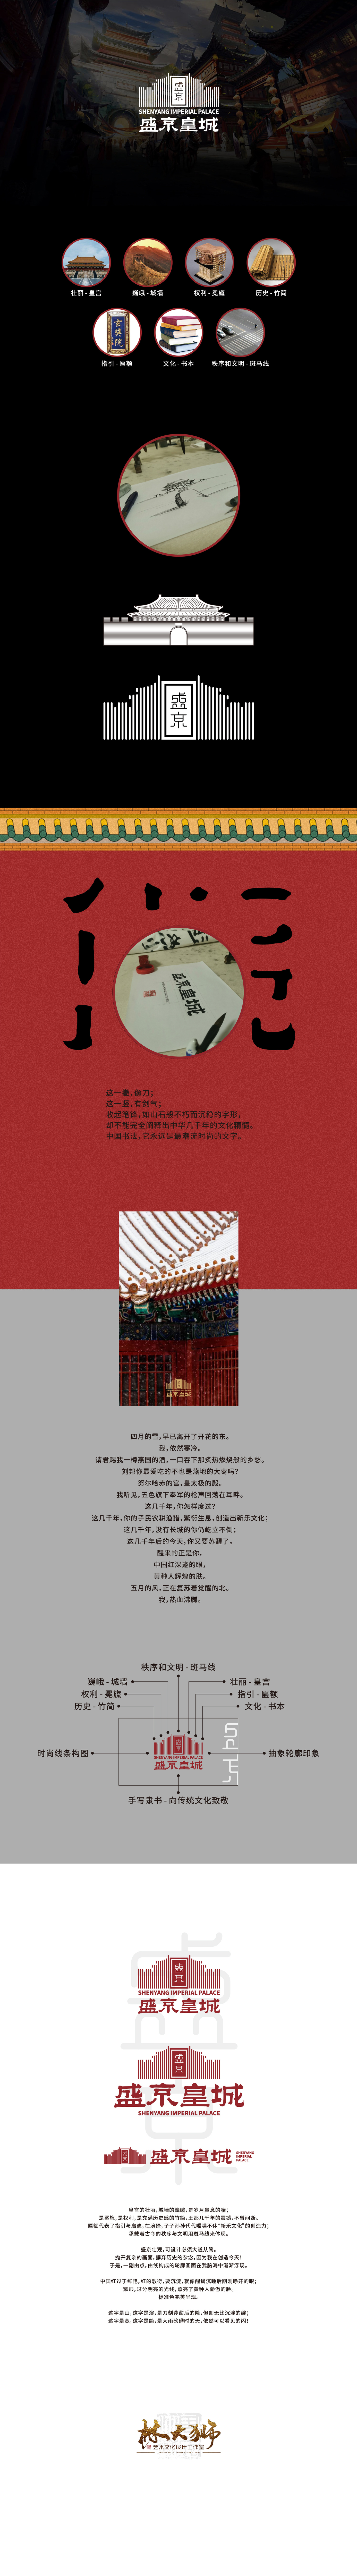 盛京皇城品牌形象设计